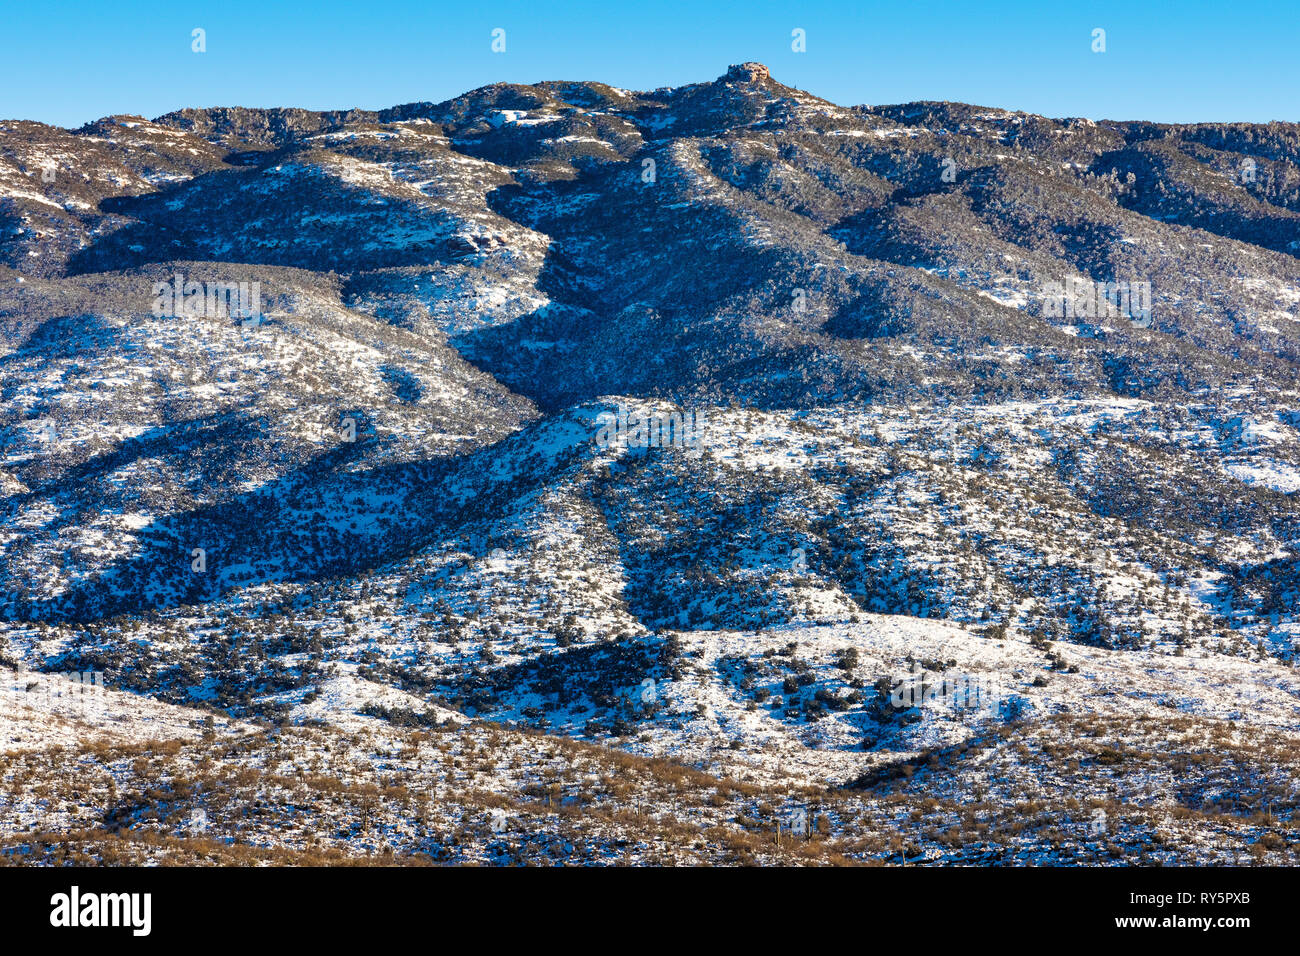 Rincon Mountains with fresh snow, Redington Pass, Tucson, Arizona Stock Photo